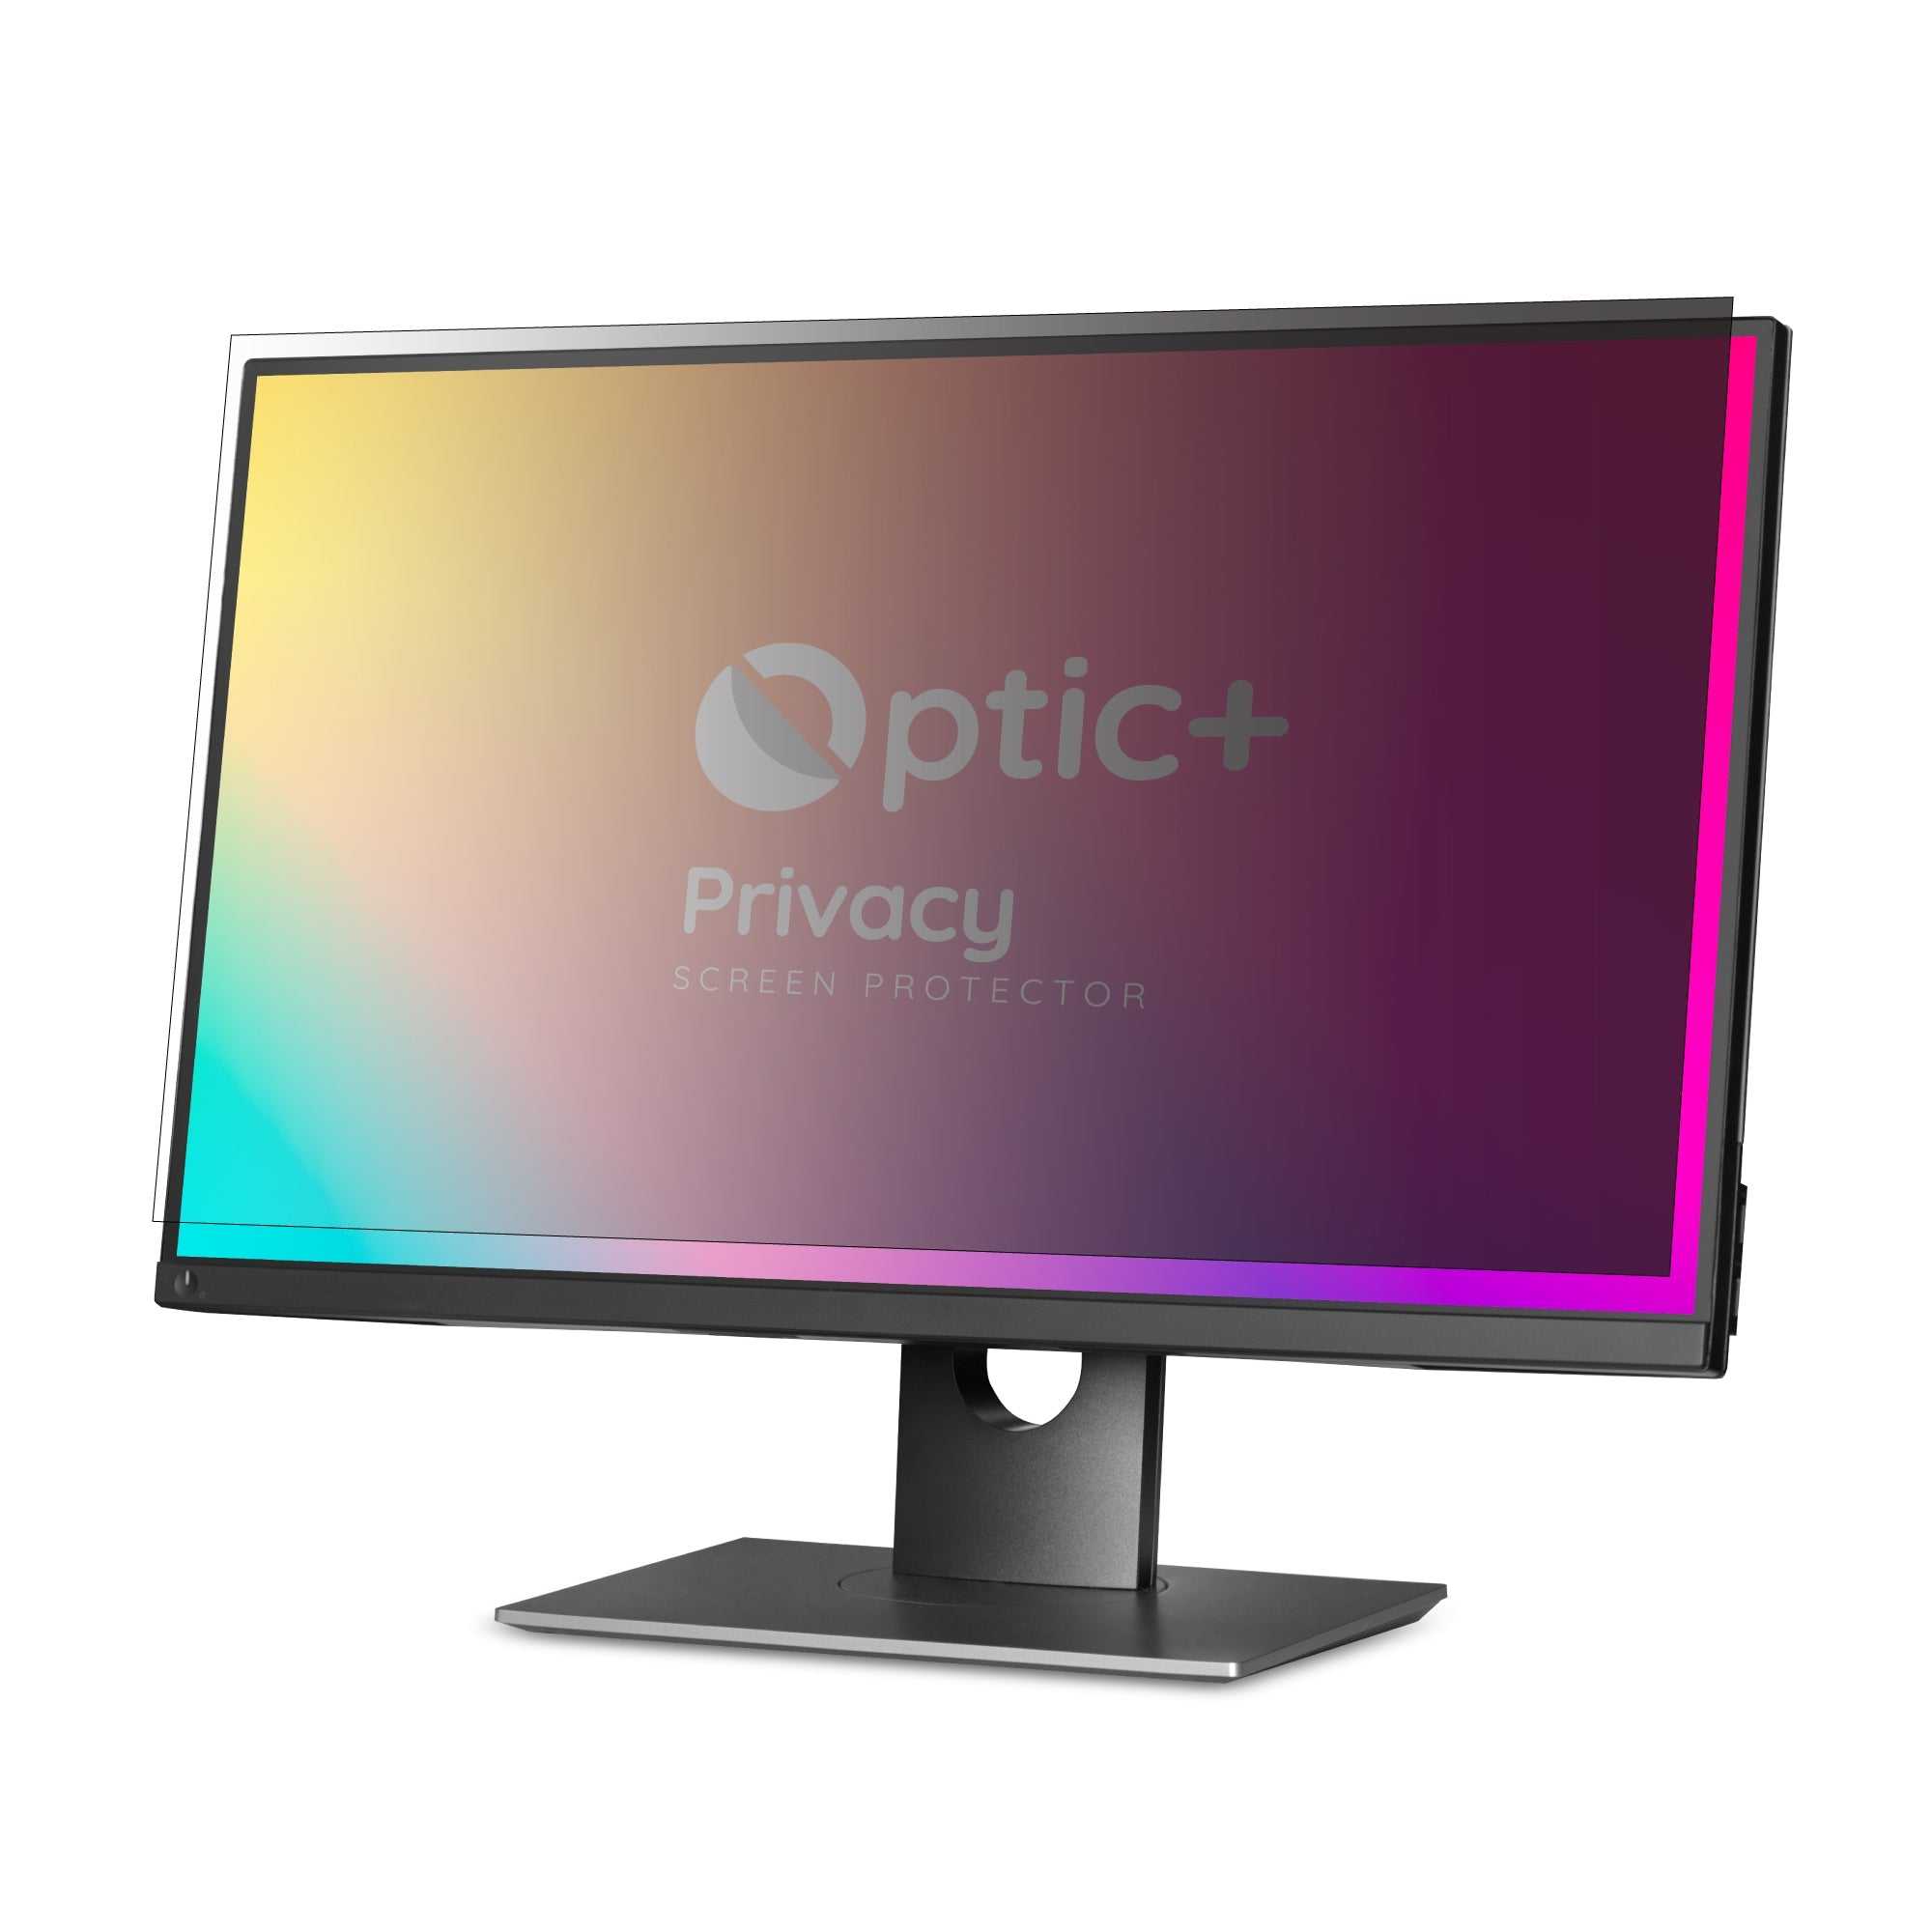 ScreenShield, Filtro privacy Optic+ per Acer Aspire 1300 (14.1)